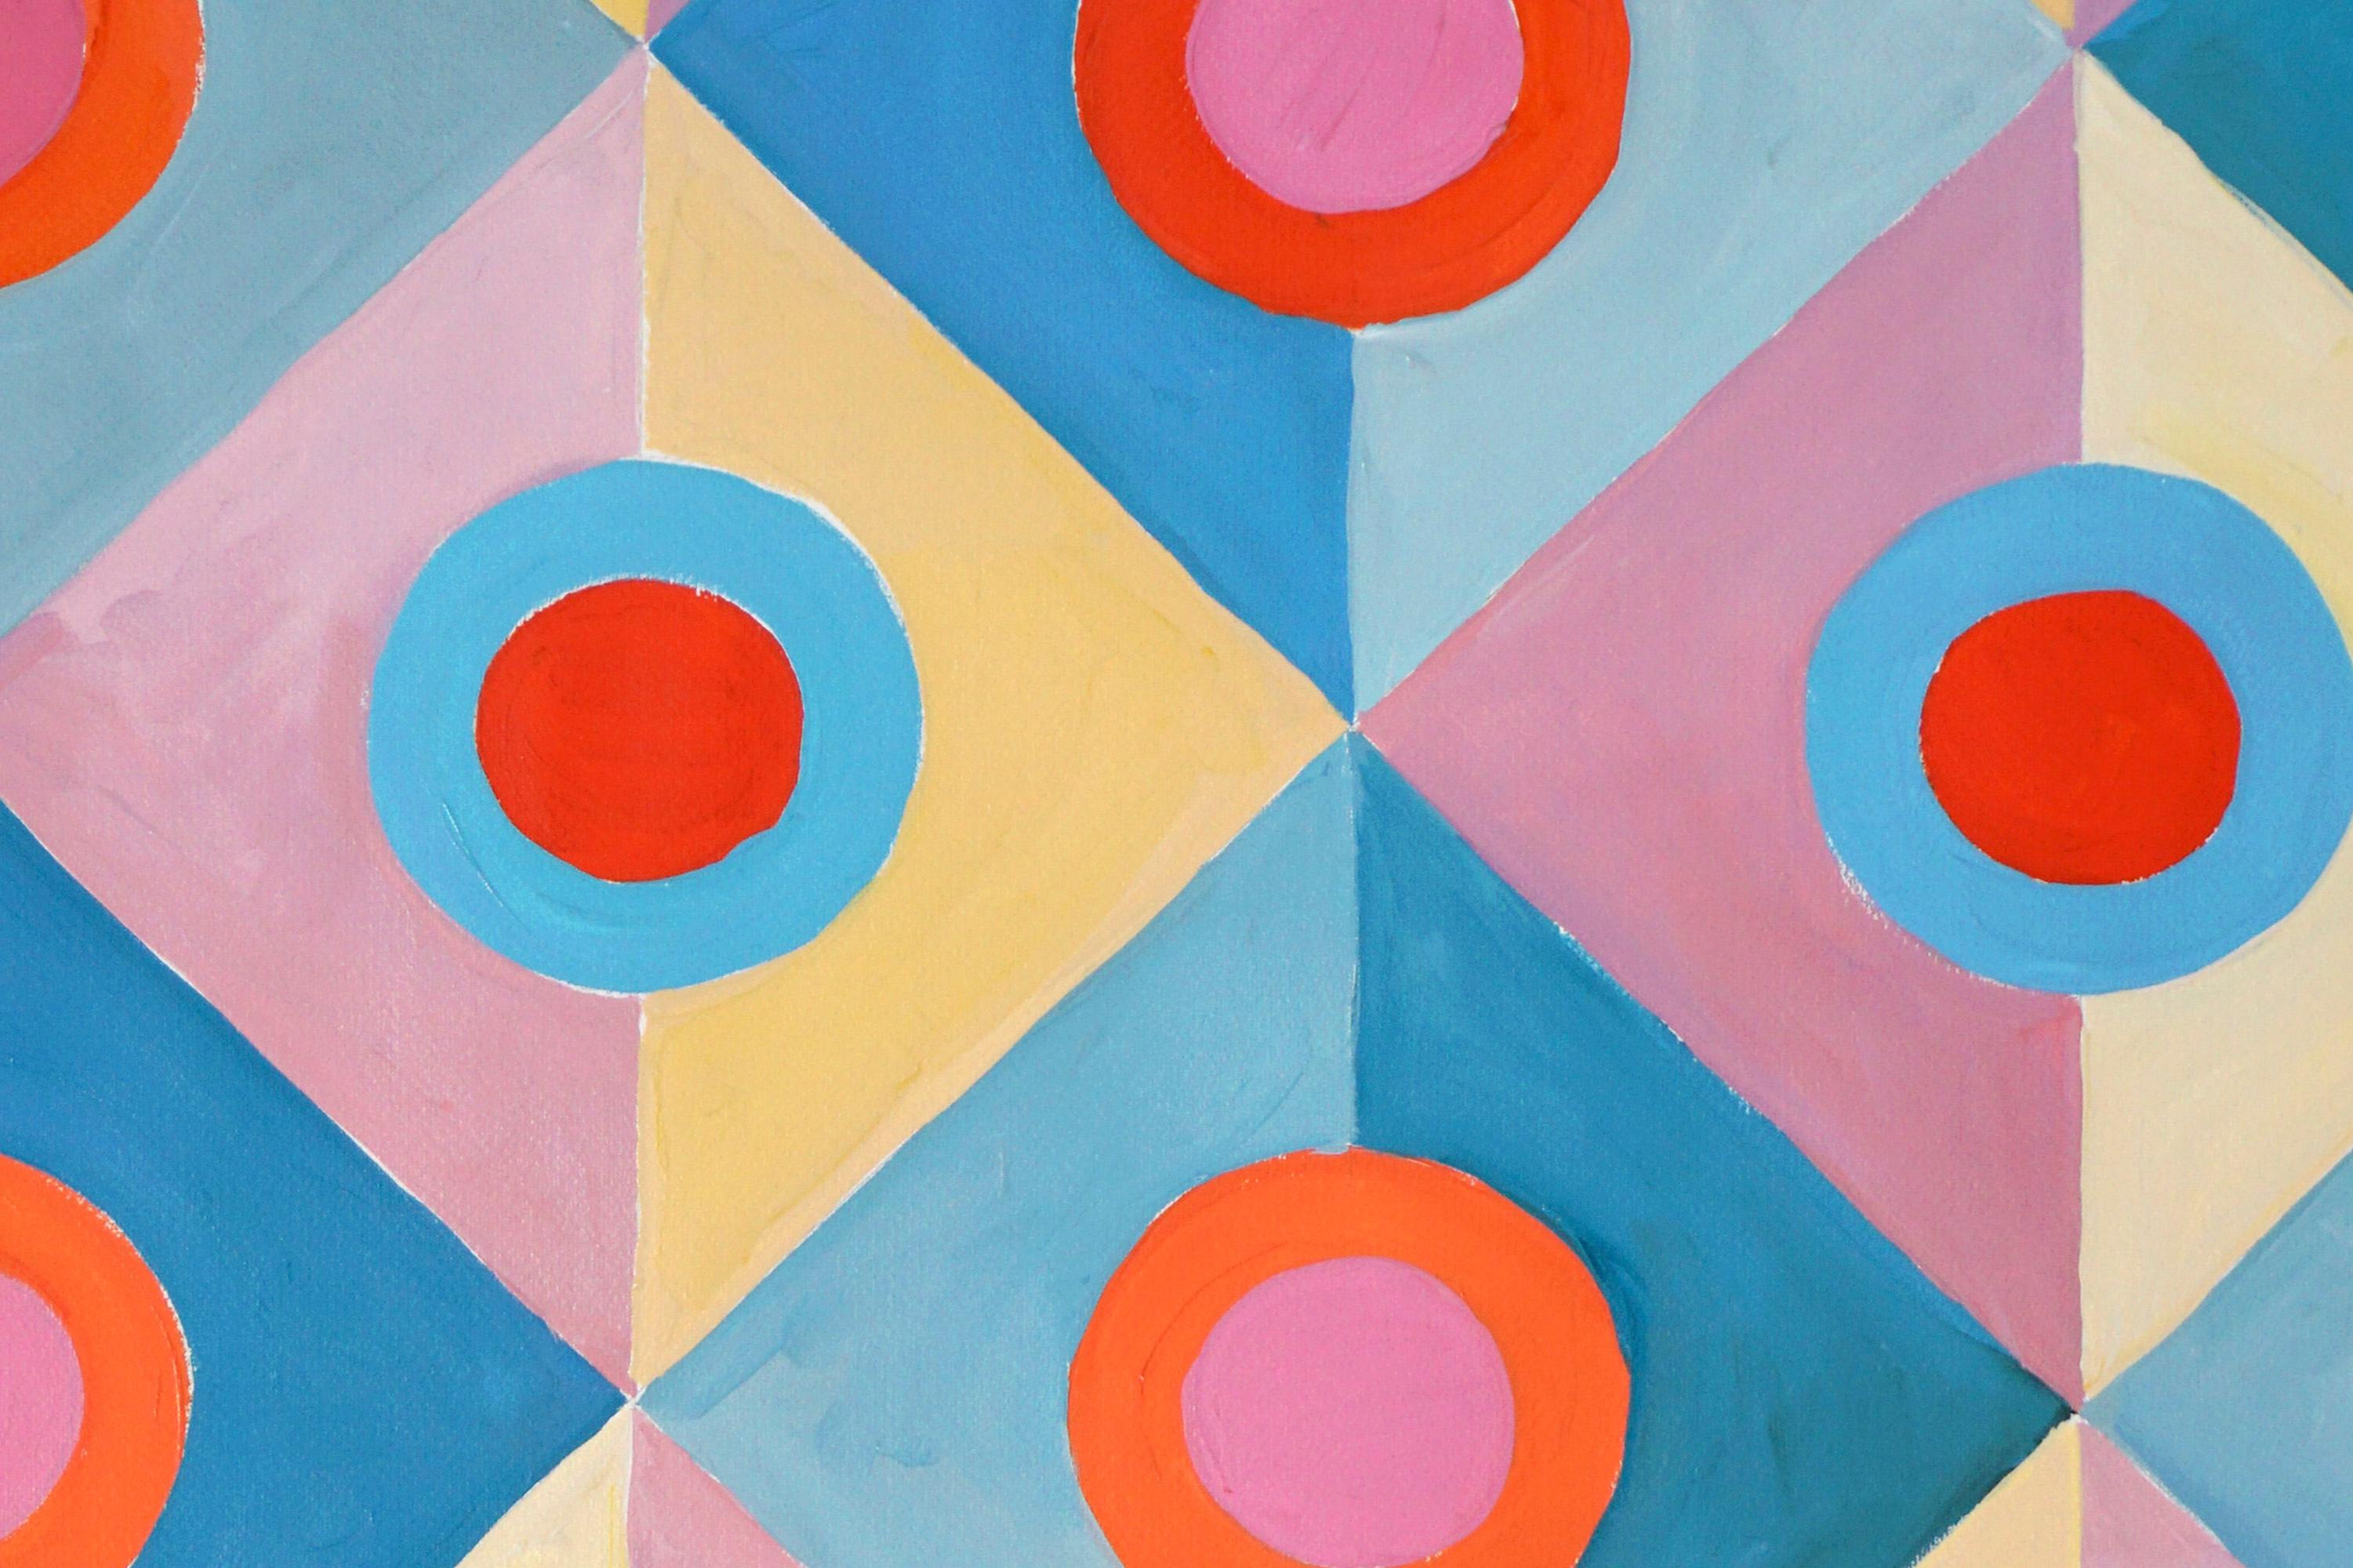 Art-déco-Pastellspiegel, Türkis- und Rosa-Geometrische Kachelnmuster, Symmetrie  (Grün), Landscape Painting, von Natalia Roman